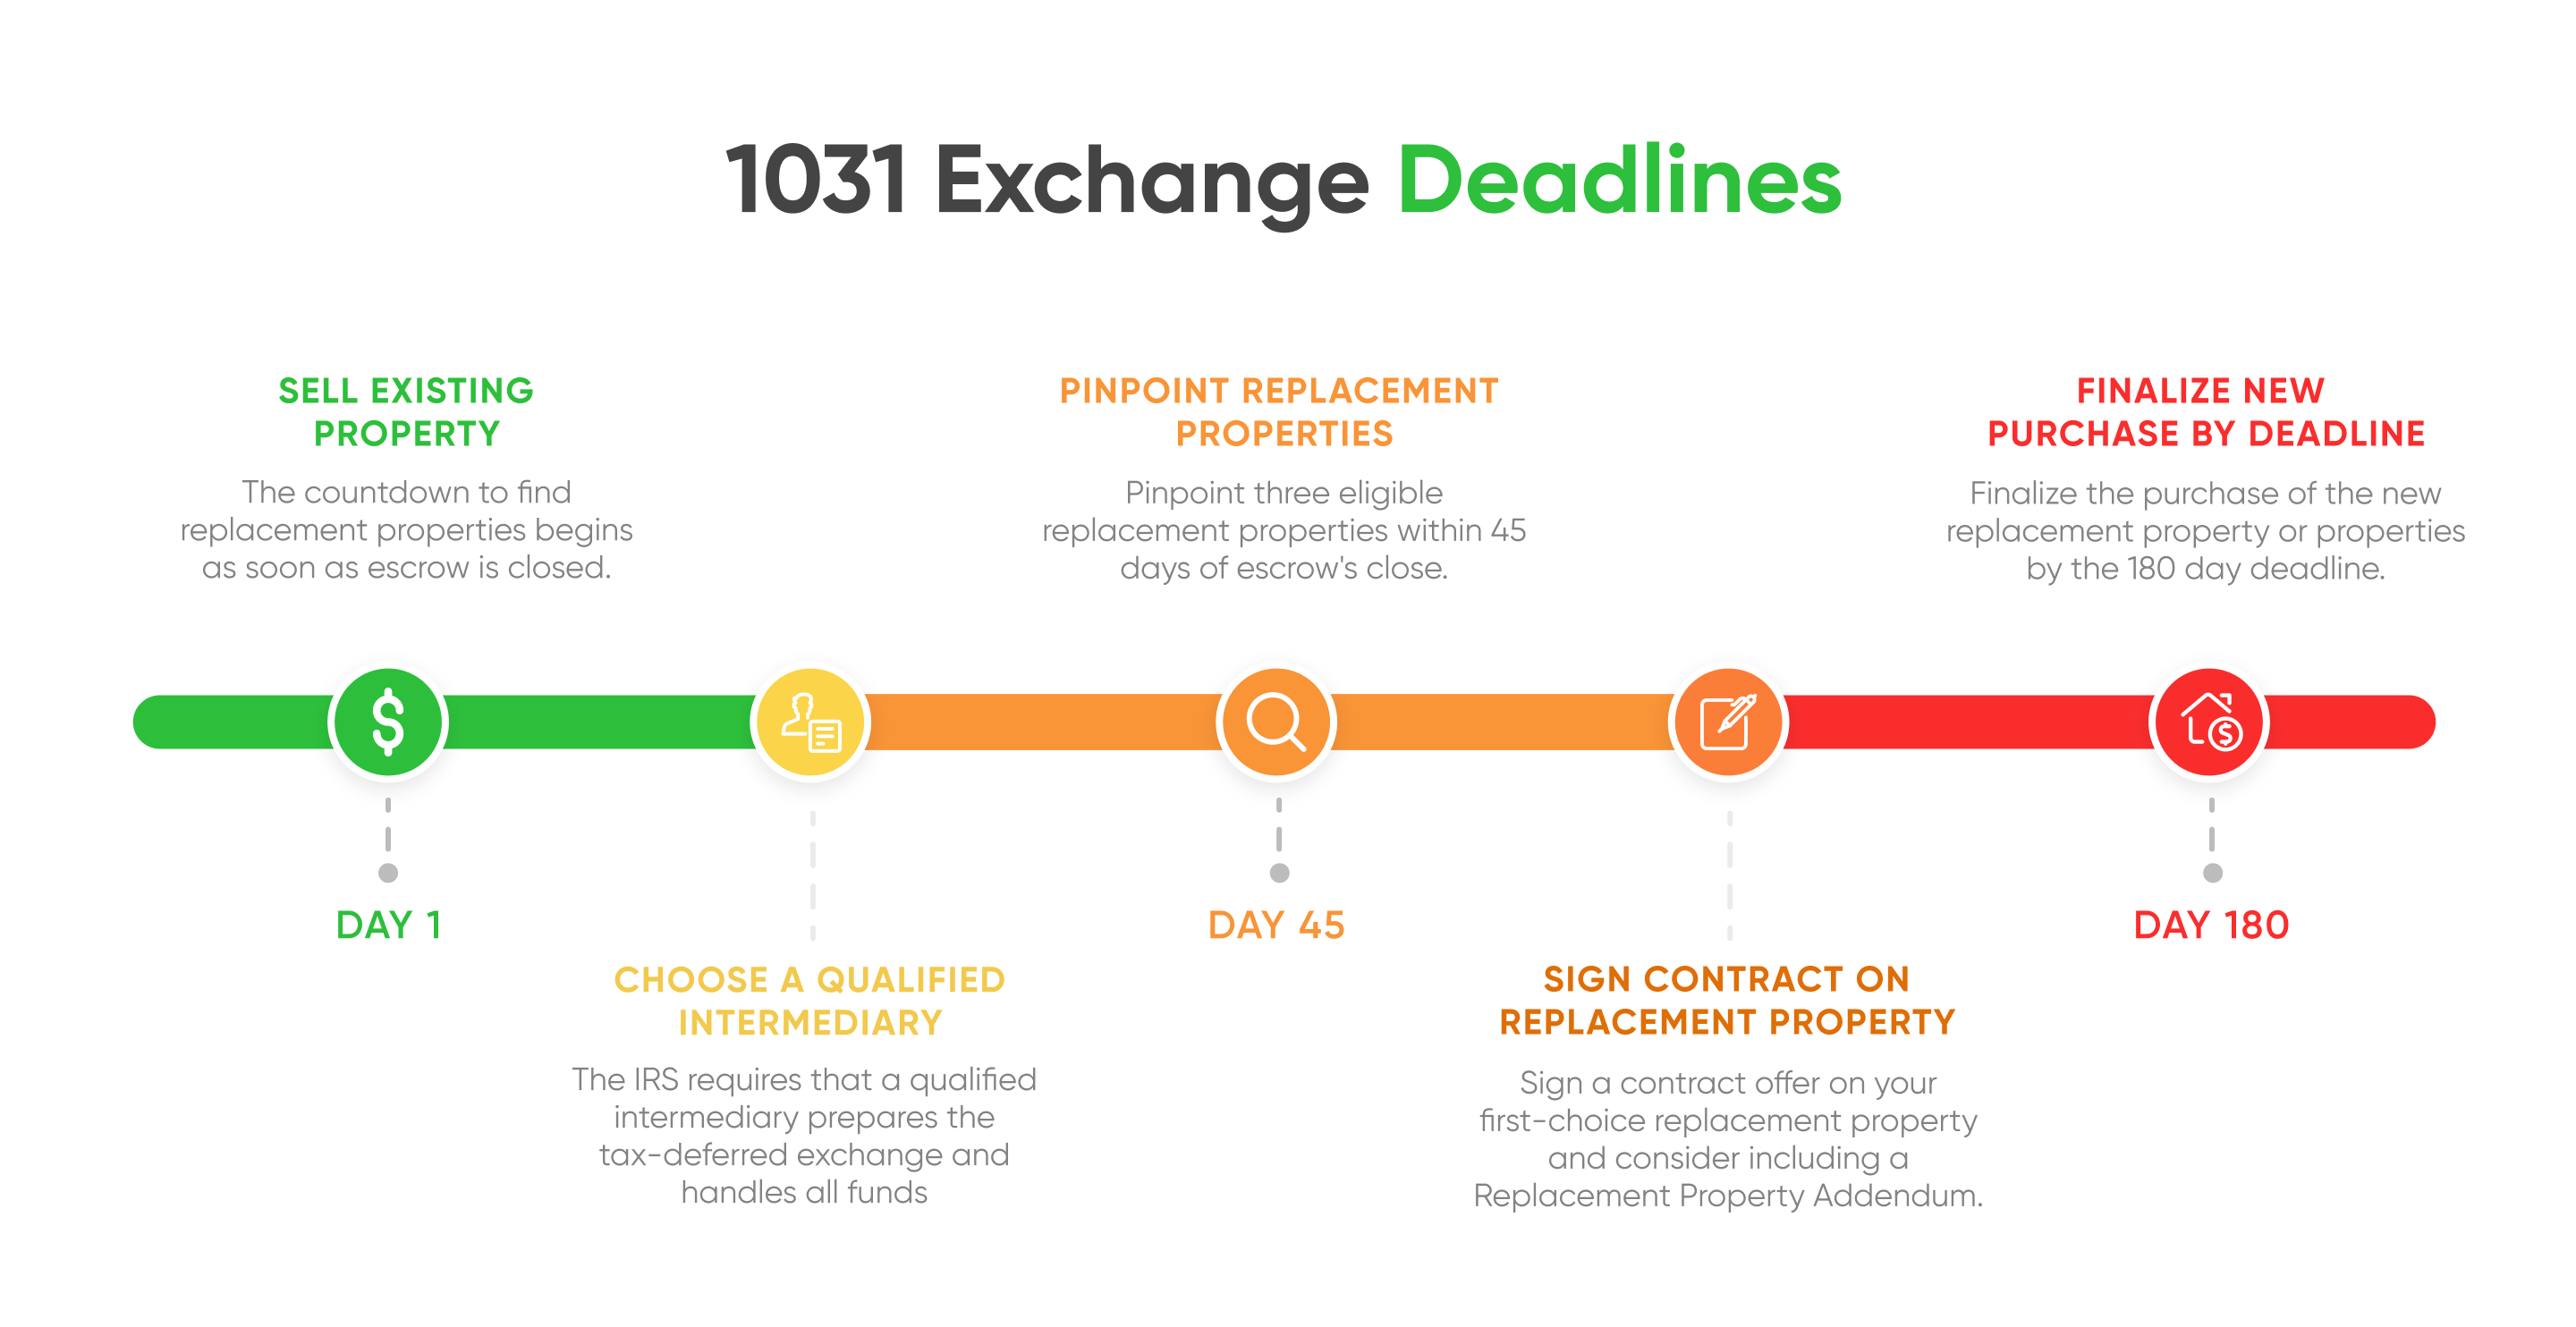 1031 exchange financing deadlines